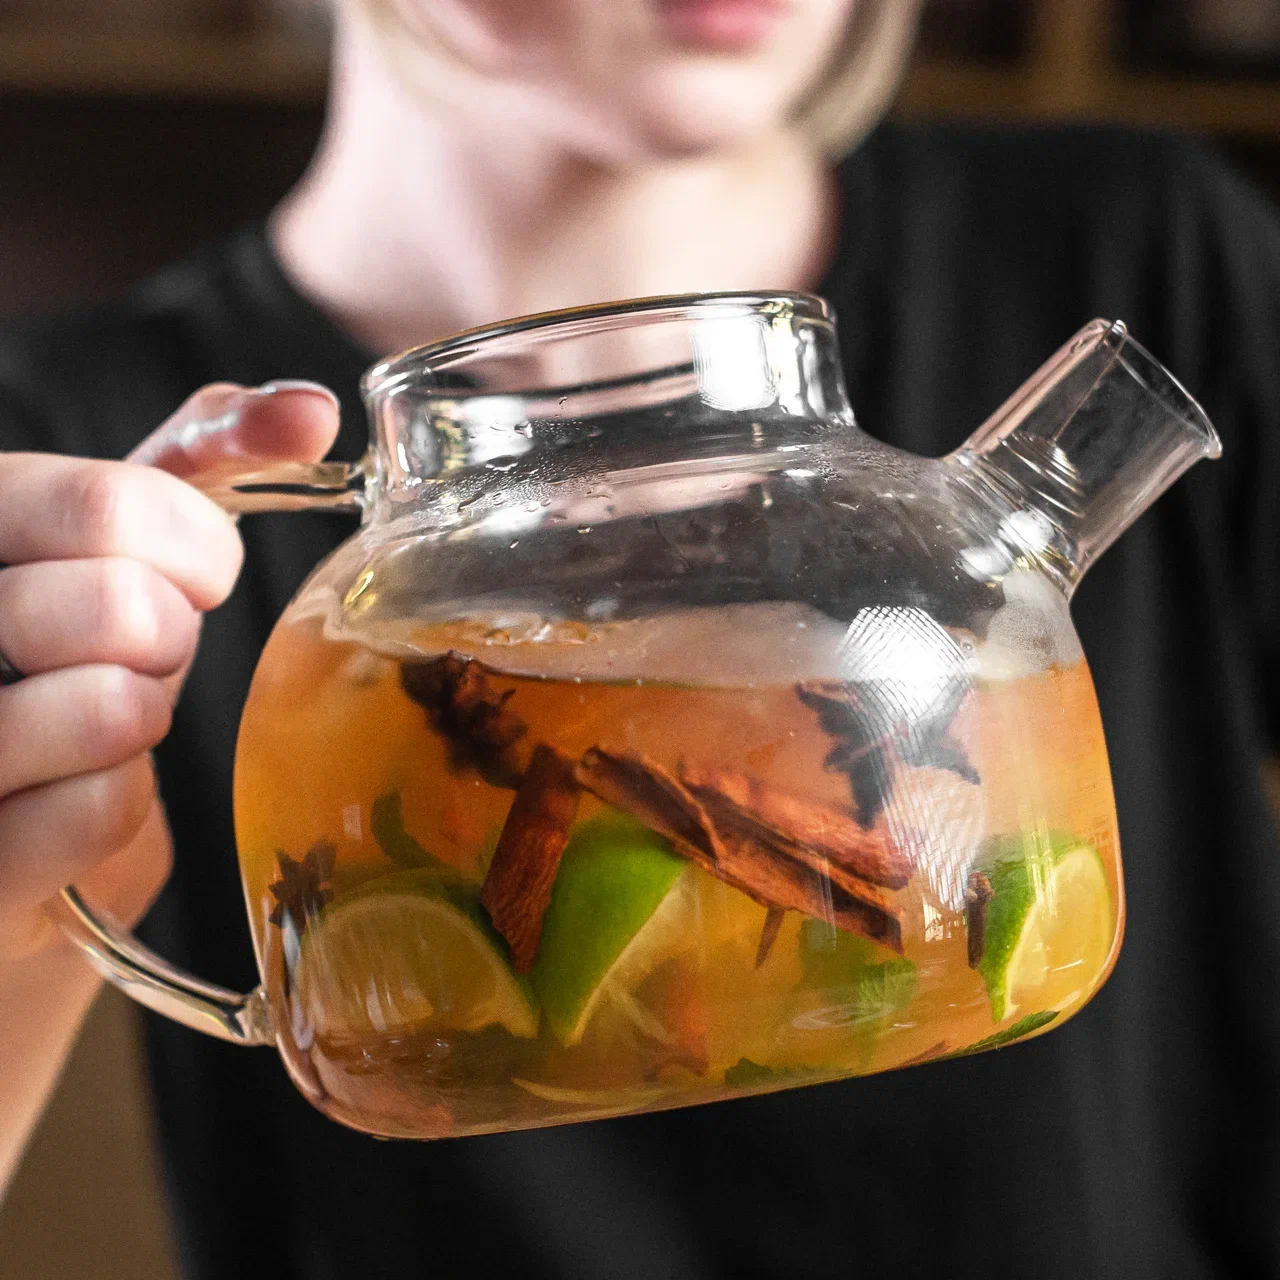 Teaworkshop. Марокканский чай рецепт. Чаи фруктовые в стеклянных чайниках рецепты с фото.